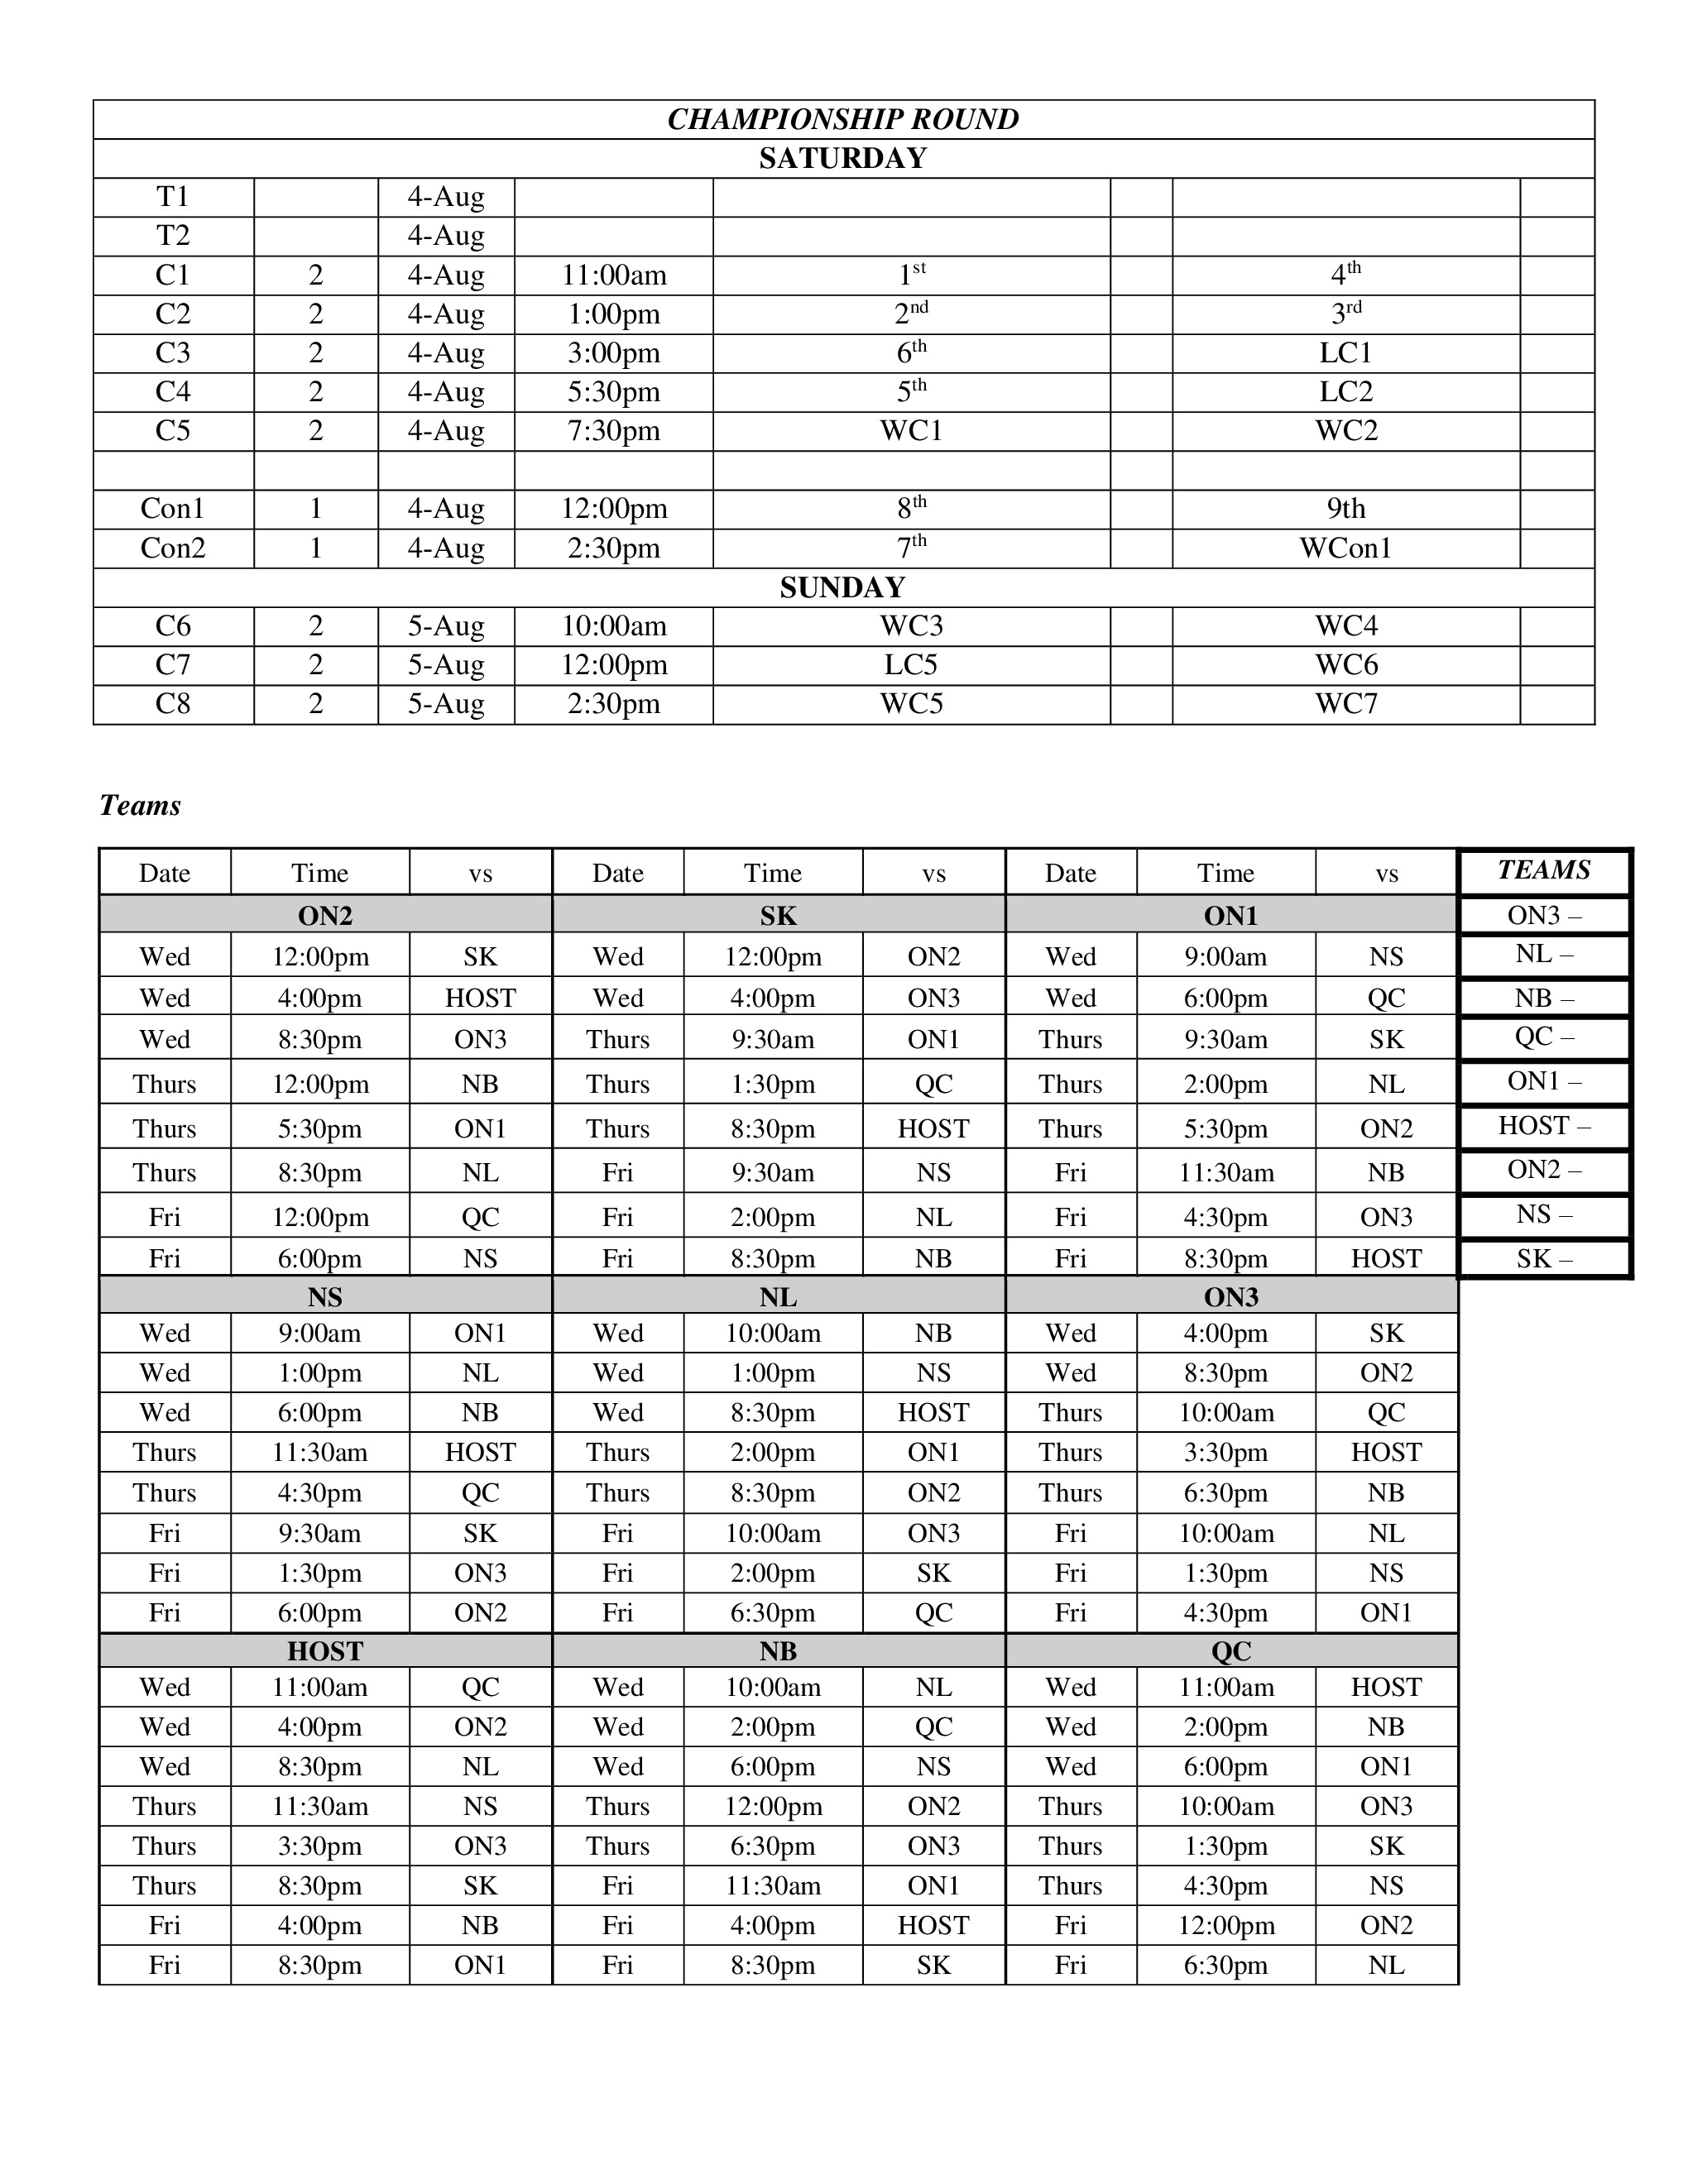 Schedule Pg 2